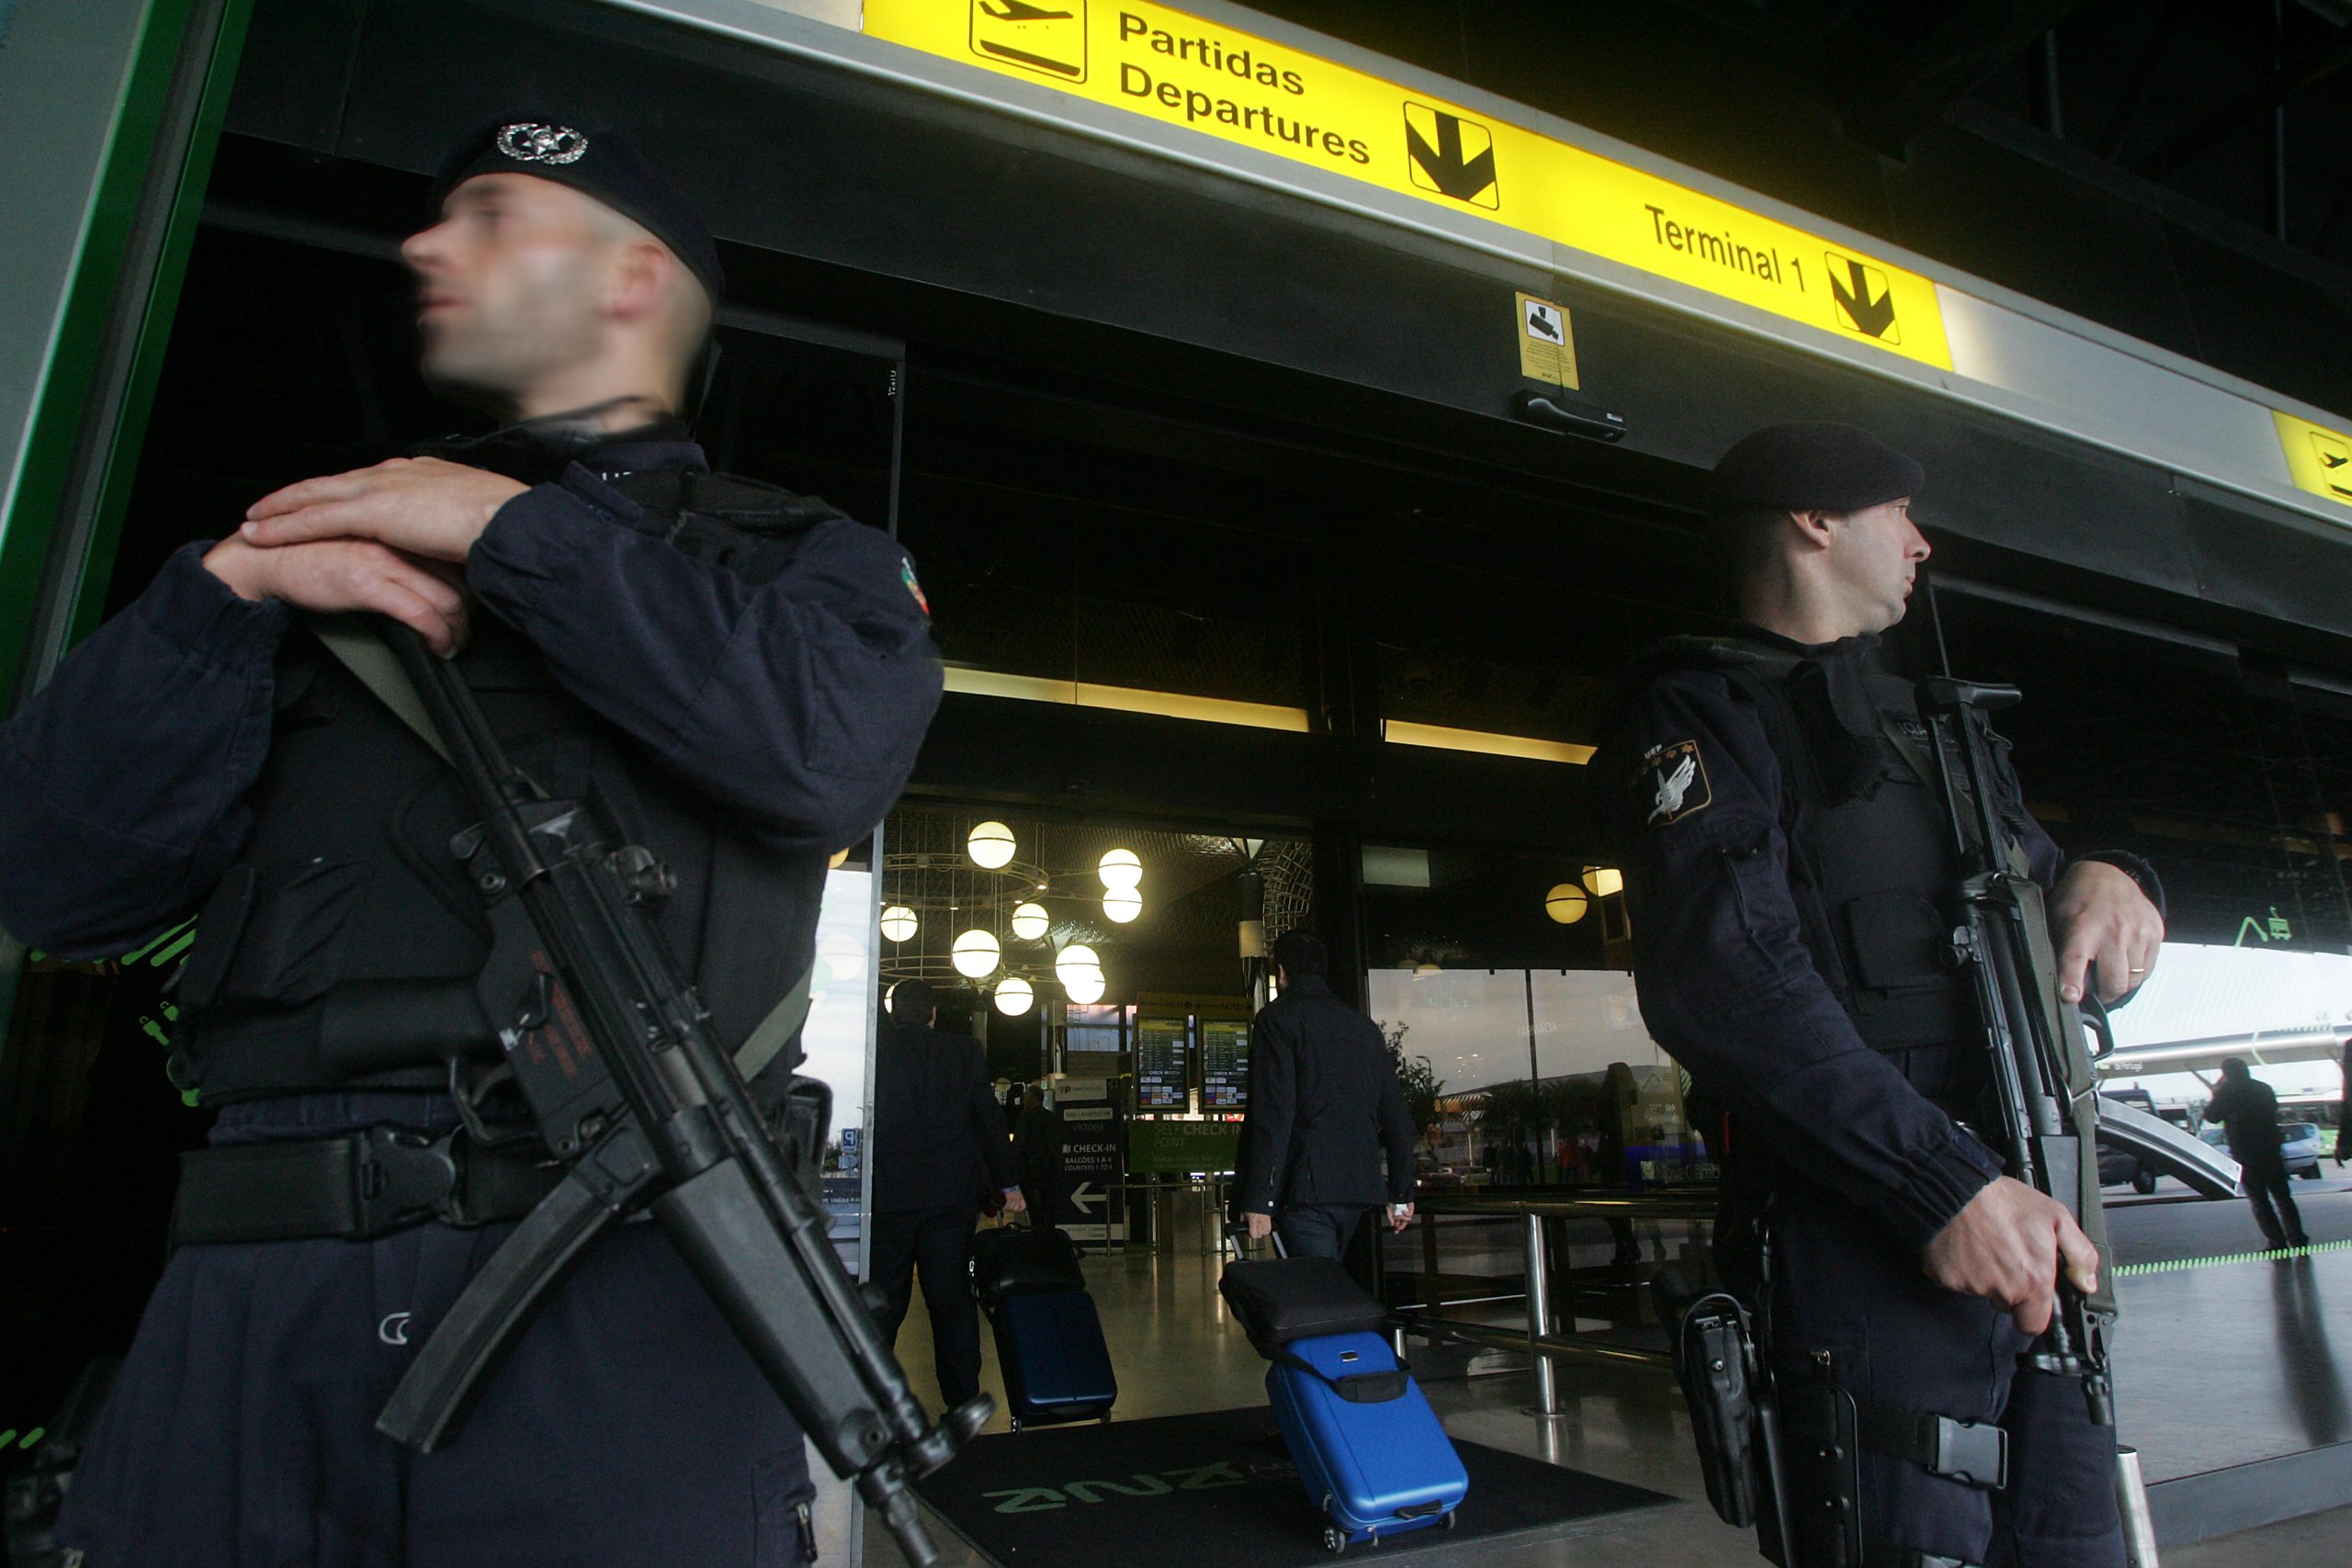 Dois homens argelinos fugiram do aeroporto de Lisboa